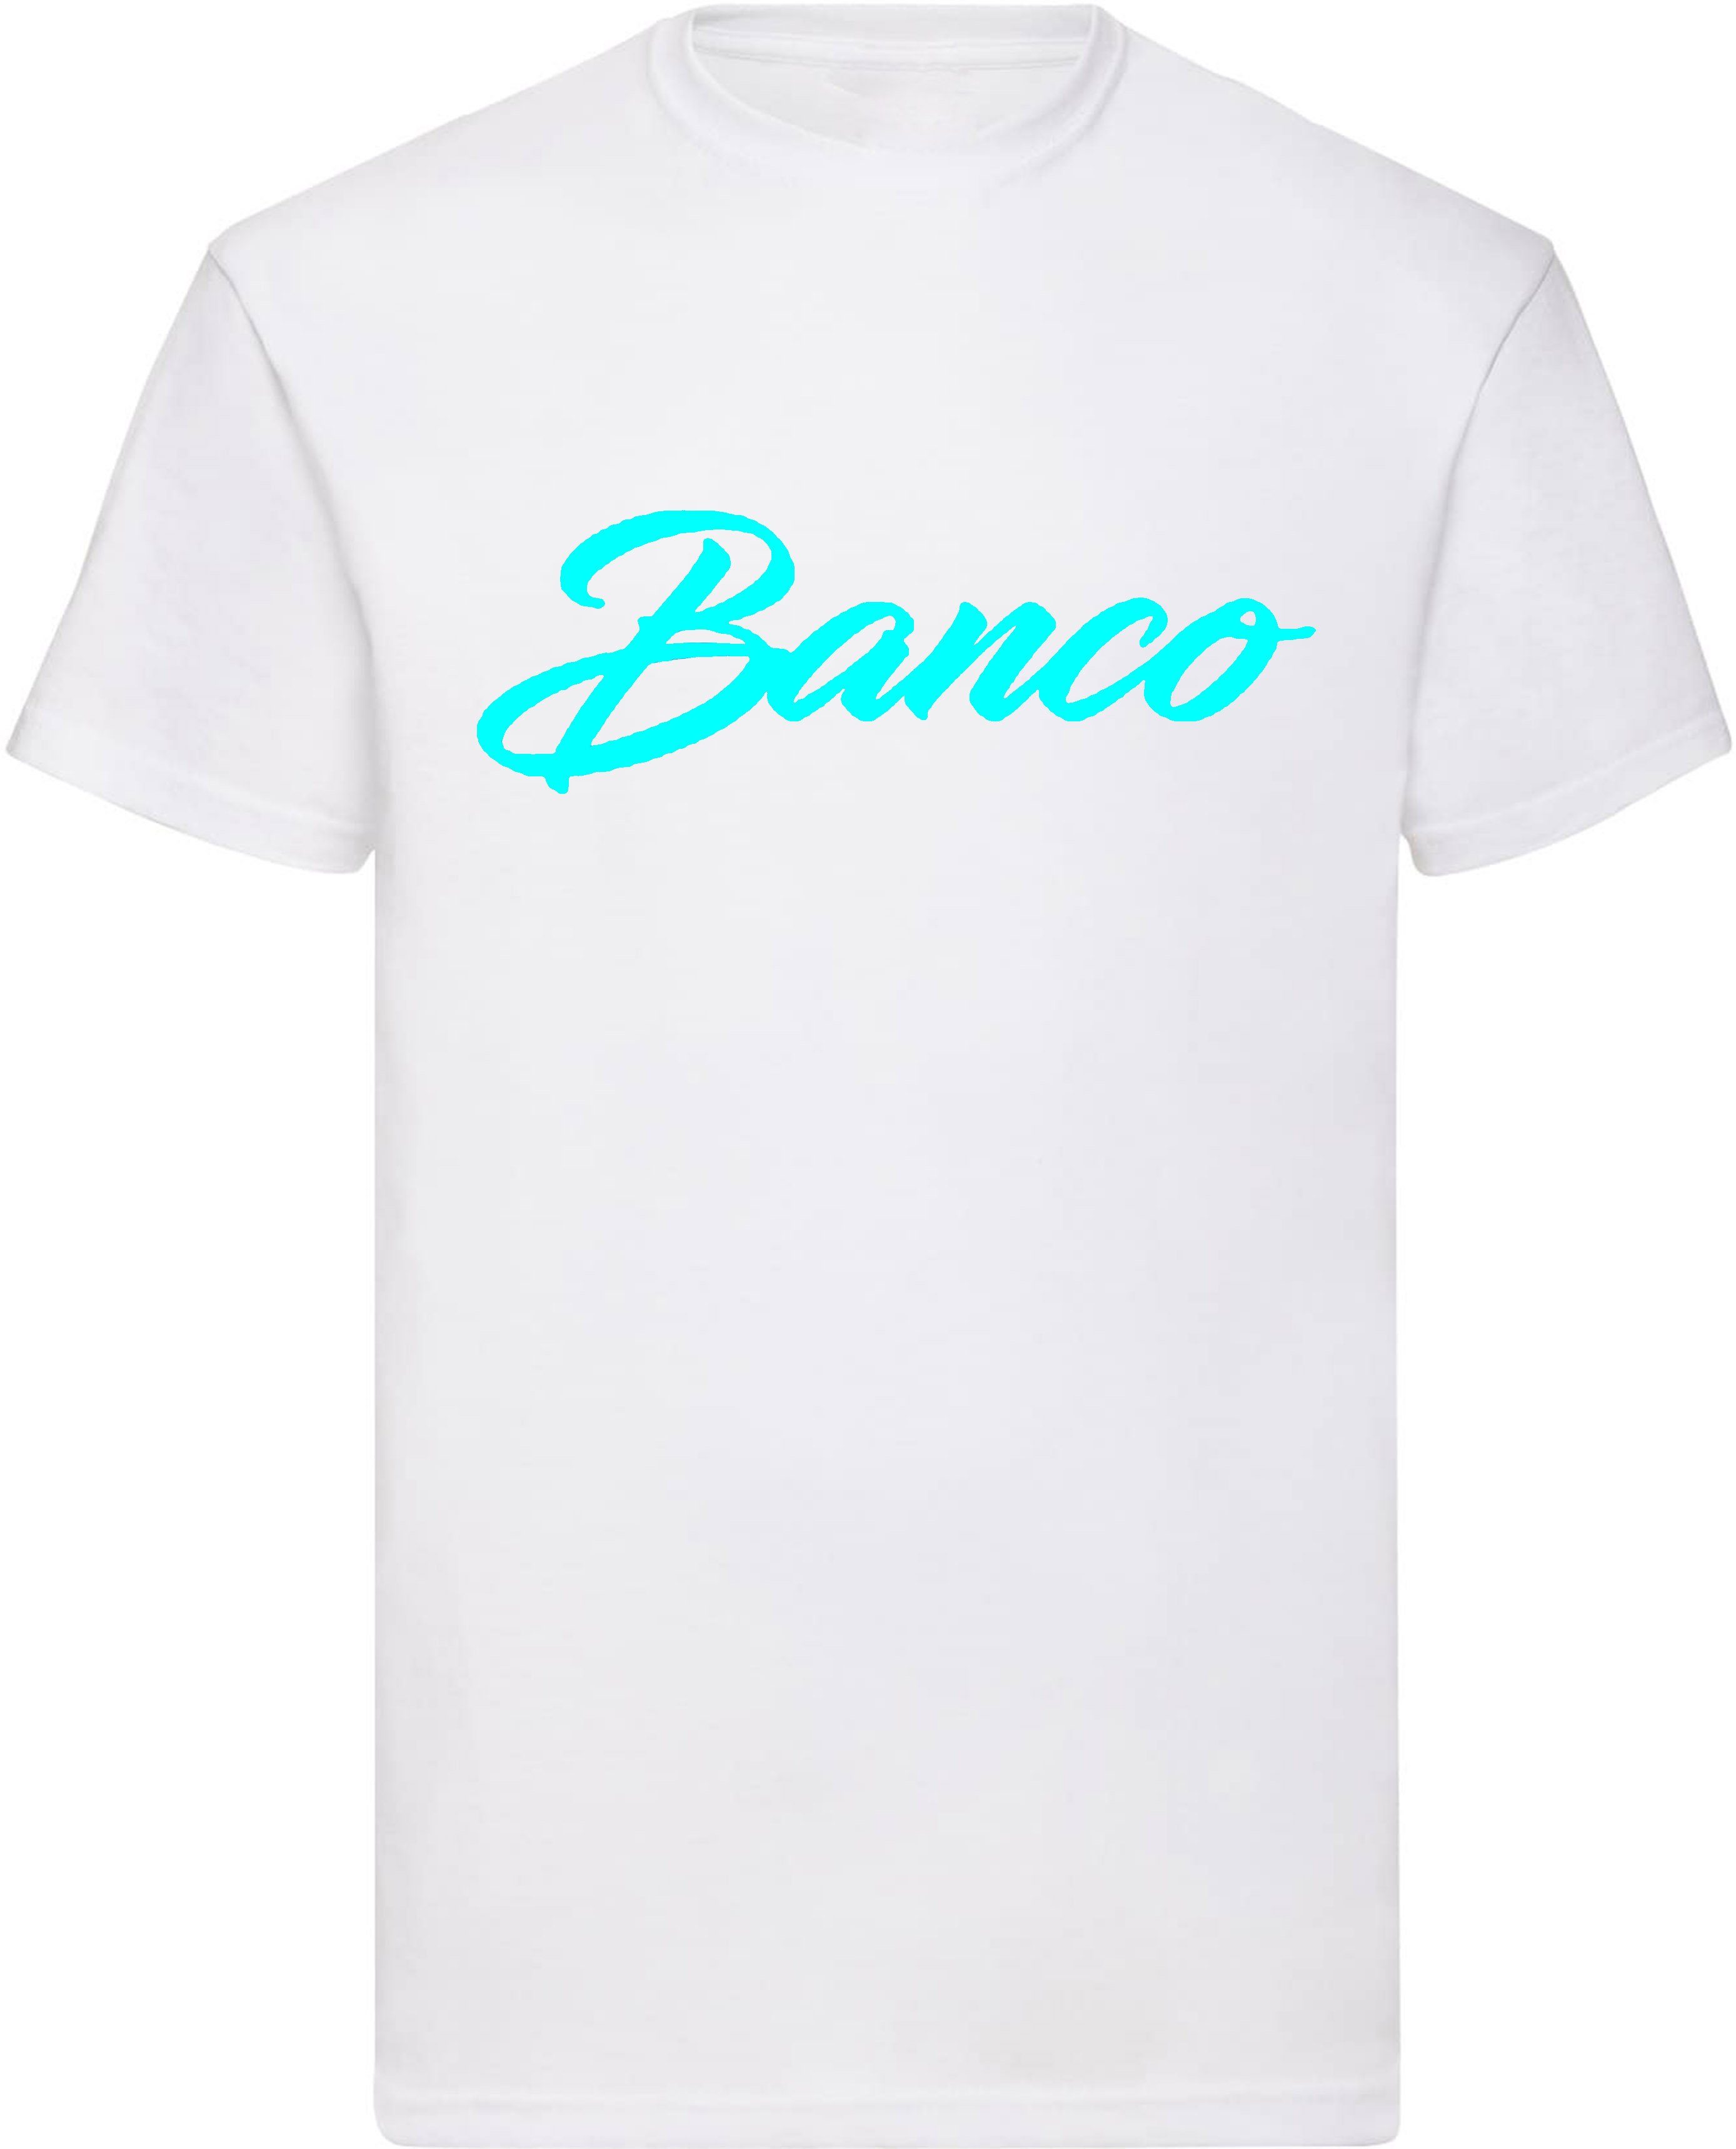 Baumwolle Freizeit Sommer Rundhals Shirt WeißTürkis Kurzarm 100% T-Shirt Streetwear Banco Sport